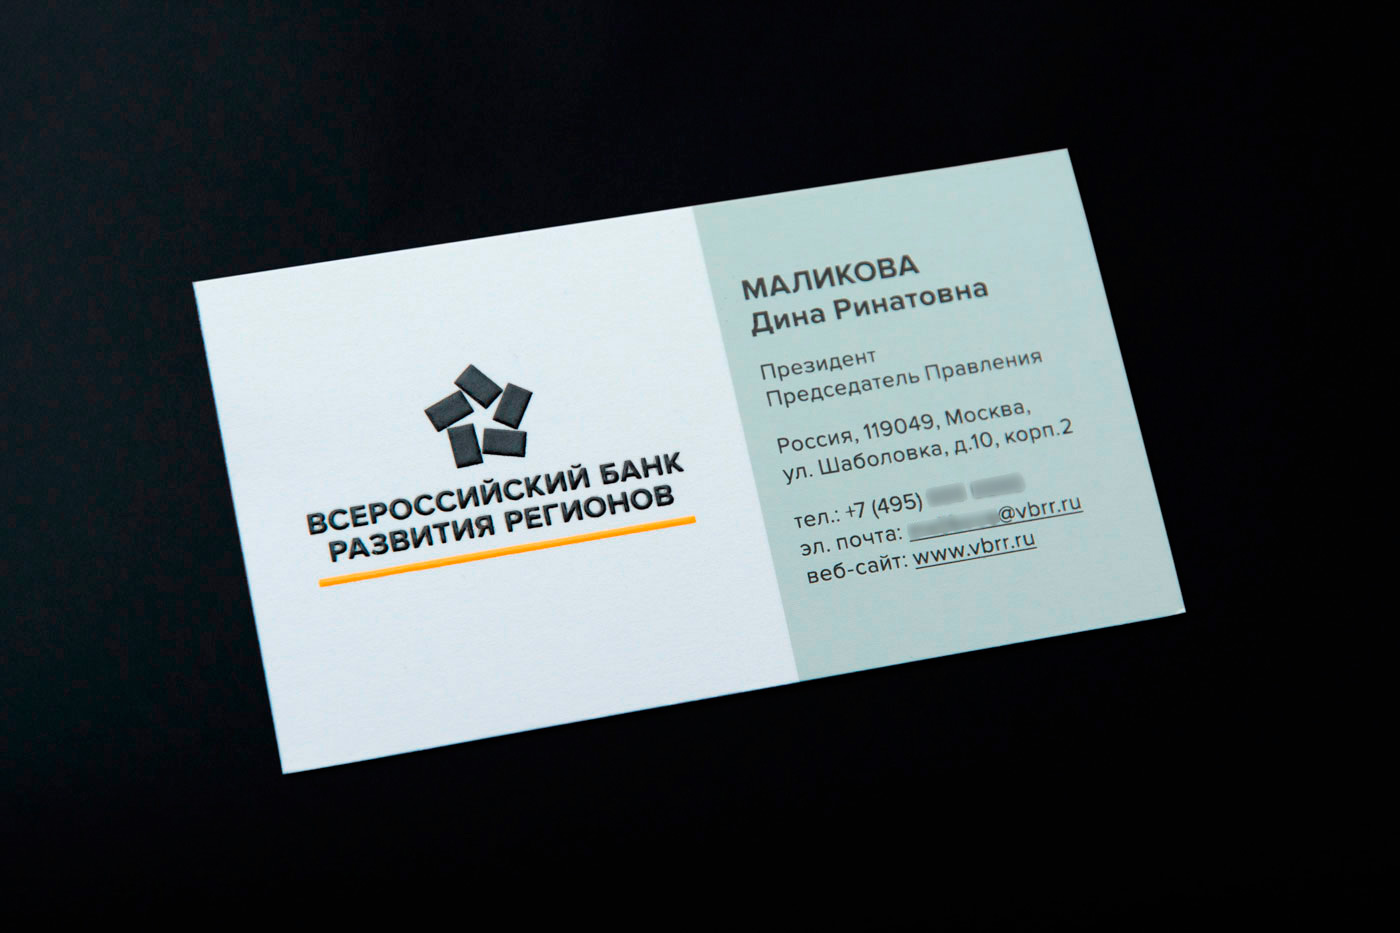 Визитка для председателя правления Всероссийского банка развития регионов